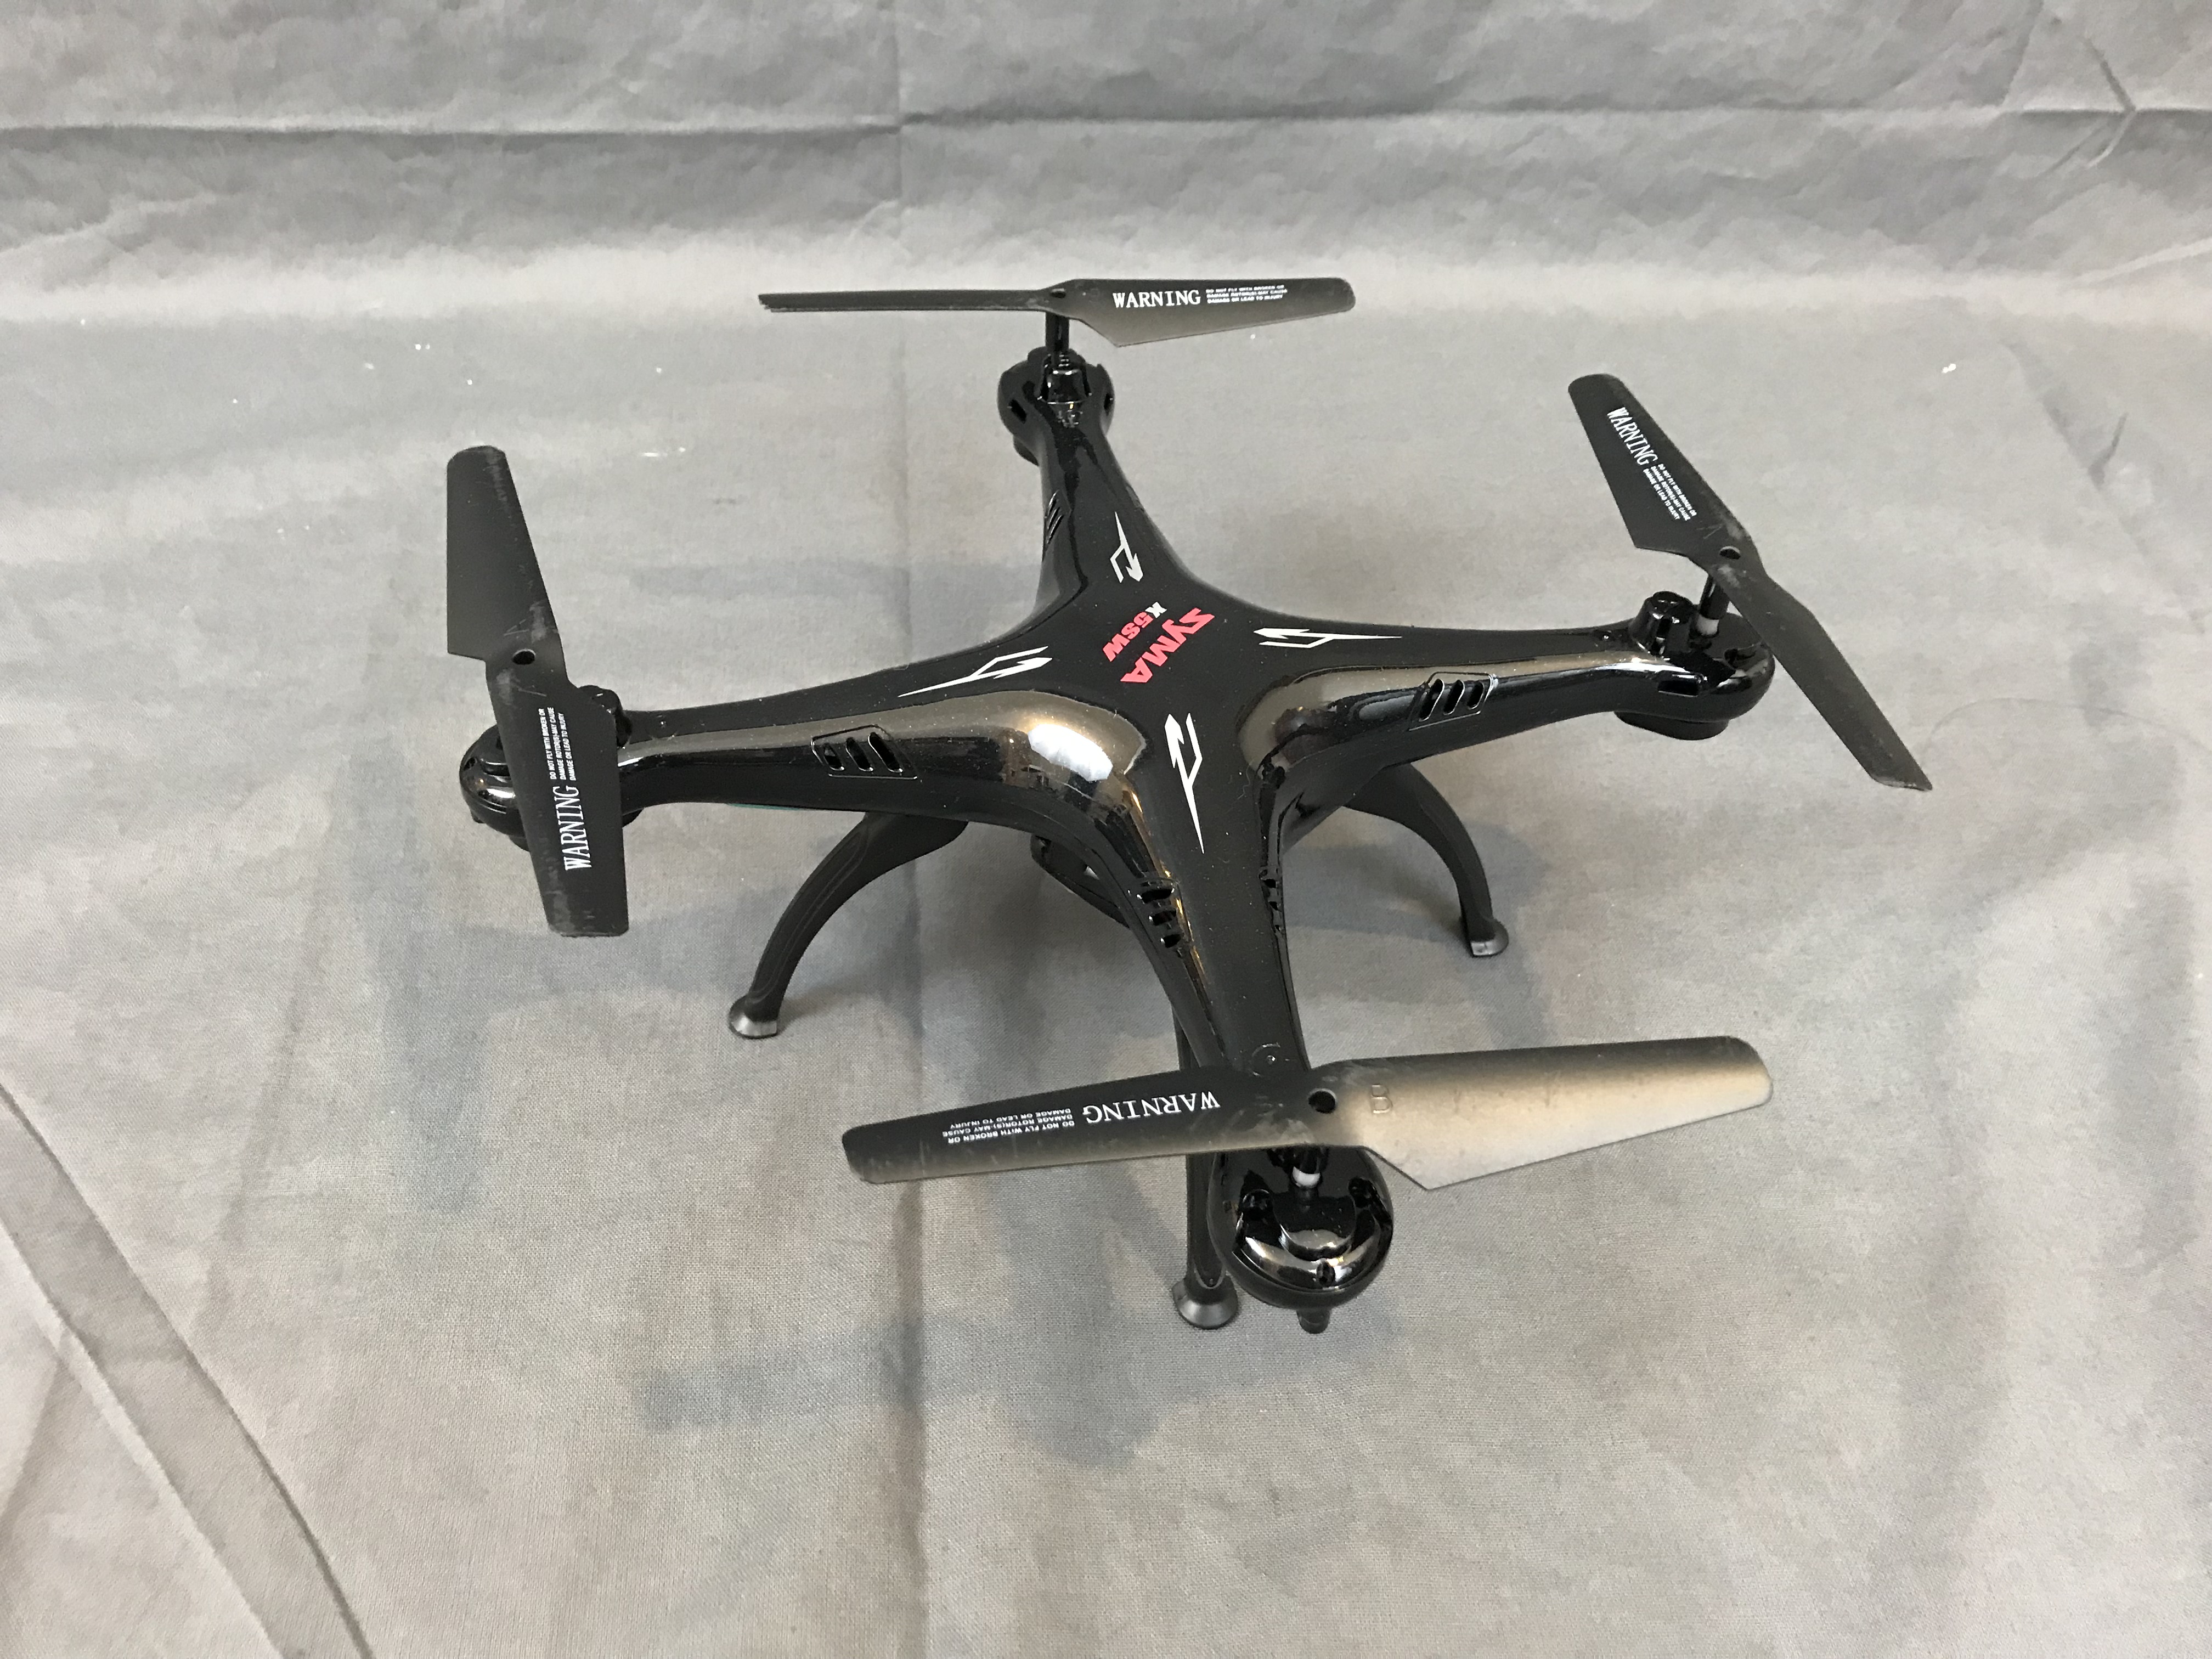 x5sw drone